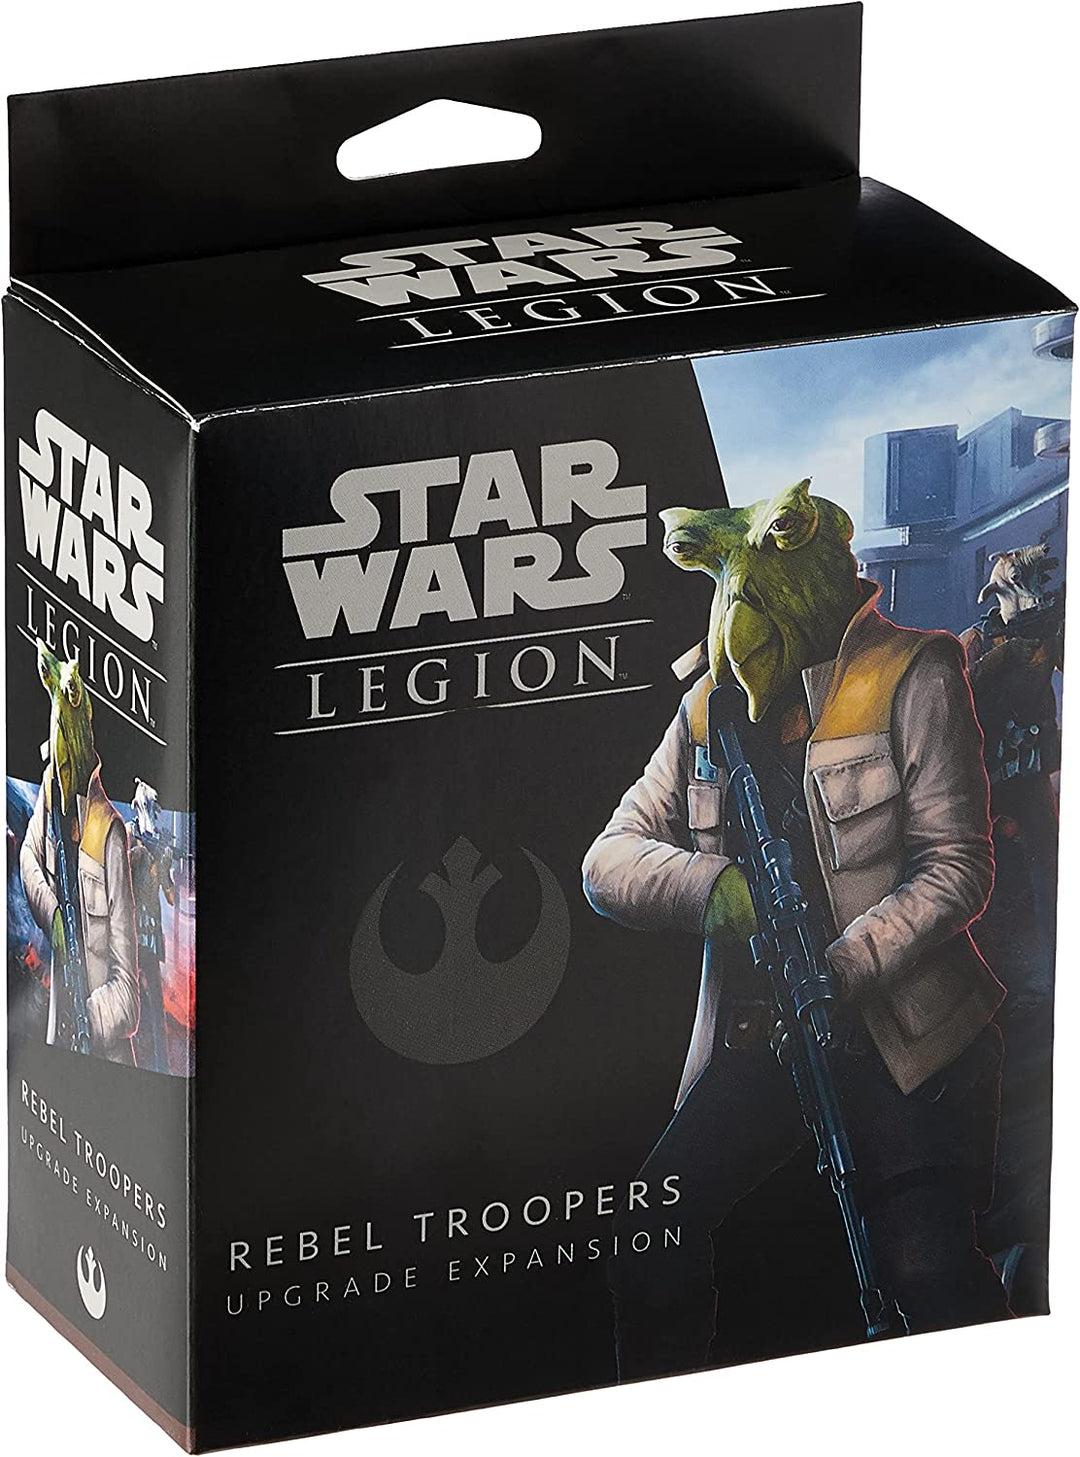 Star Wars Legion: Rebel Trooper Upgrade Expansion